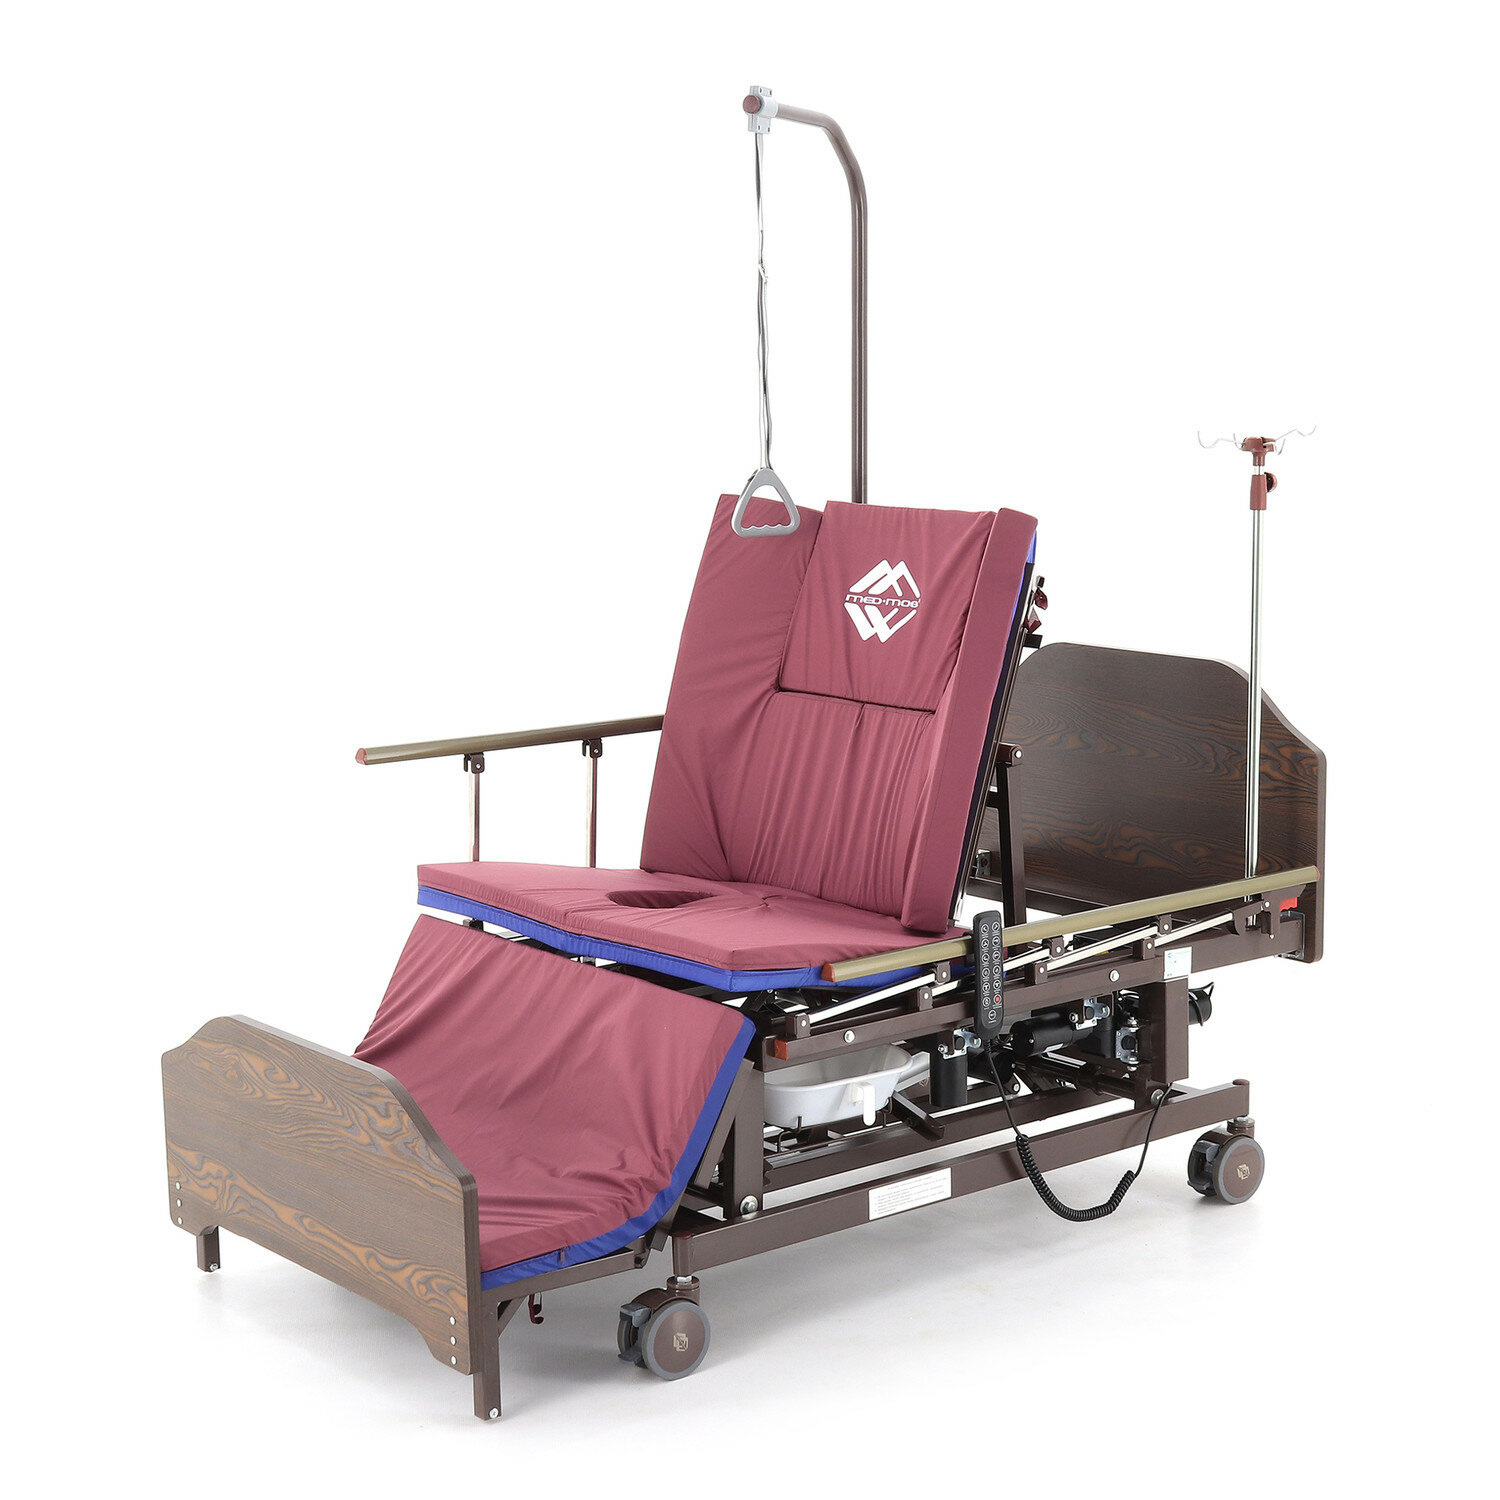 Кровать электрическая медицинская функциональная для лежащих больных DB-11А (МosMed) с функцией кардио - кресла, туалетным устройством, боковым переворачиванием и регулировкой высоты